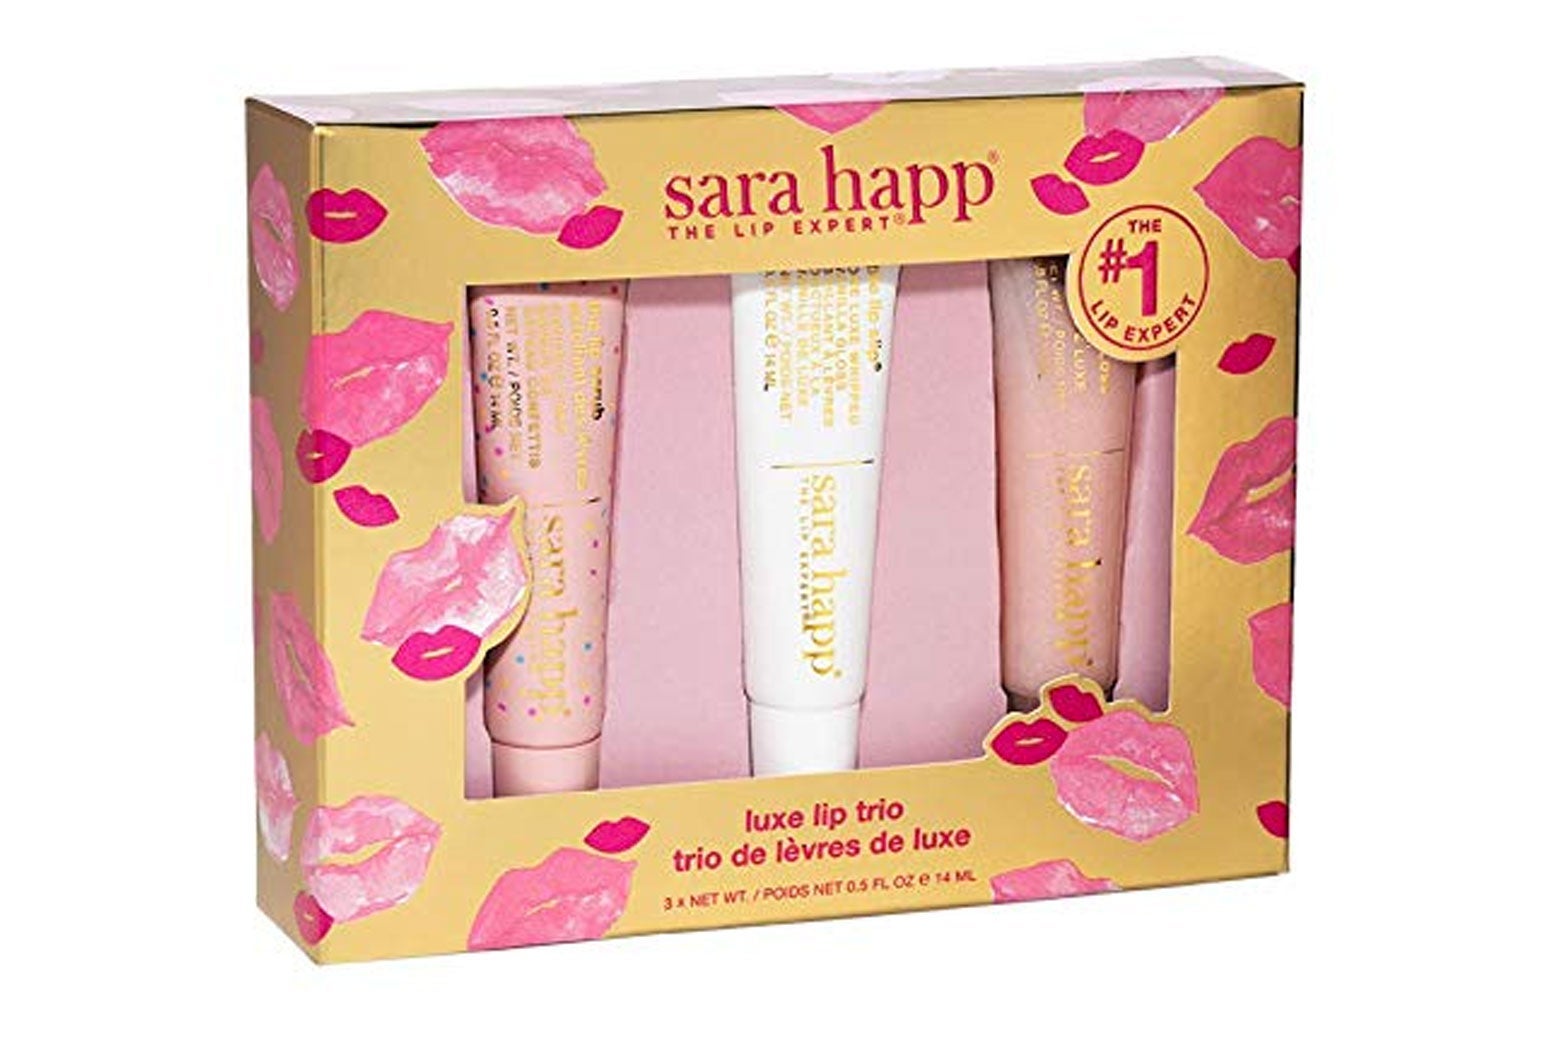 Sara Happ lip gloss kit.